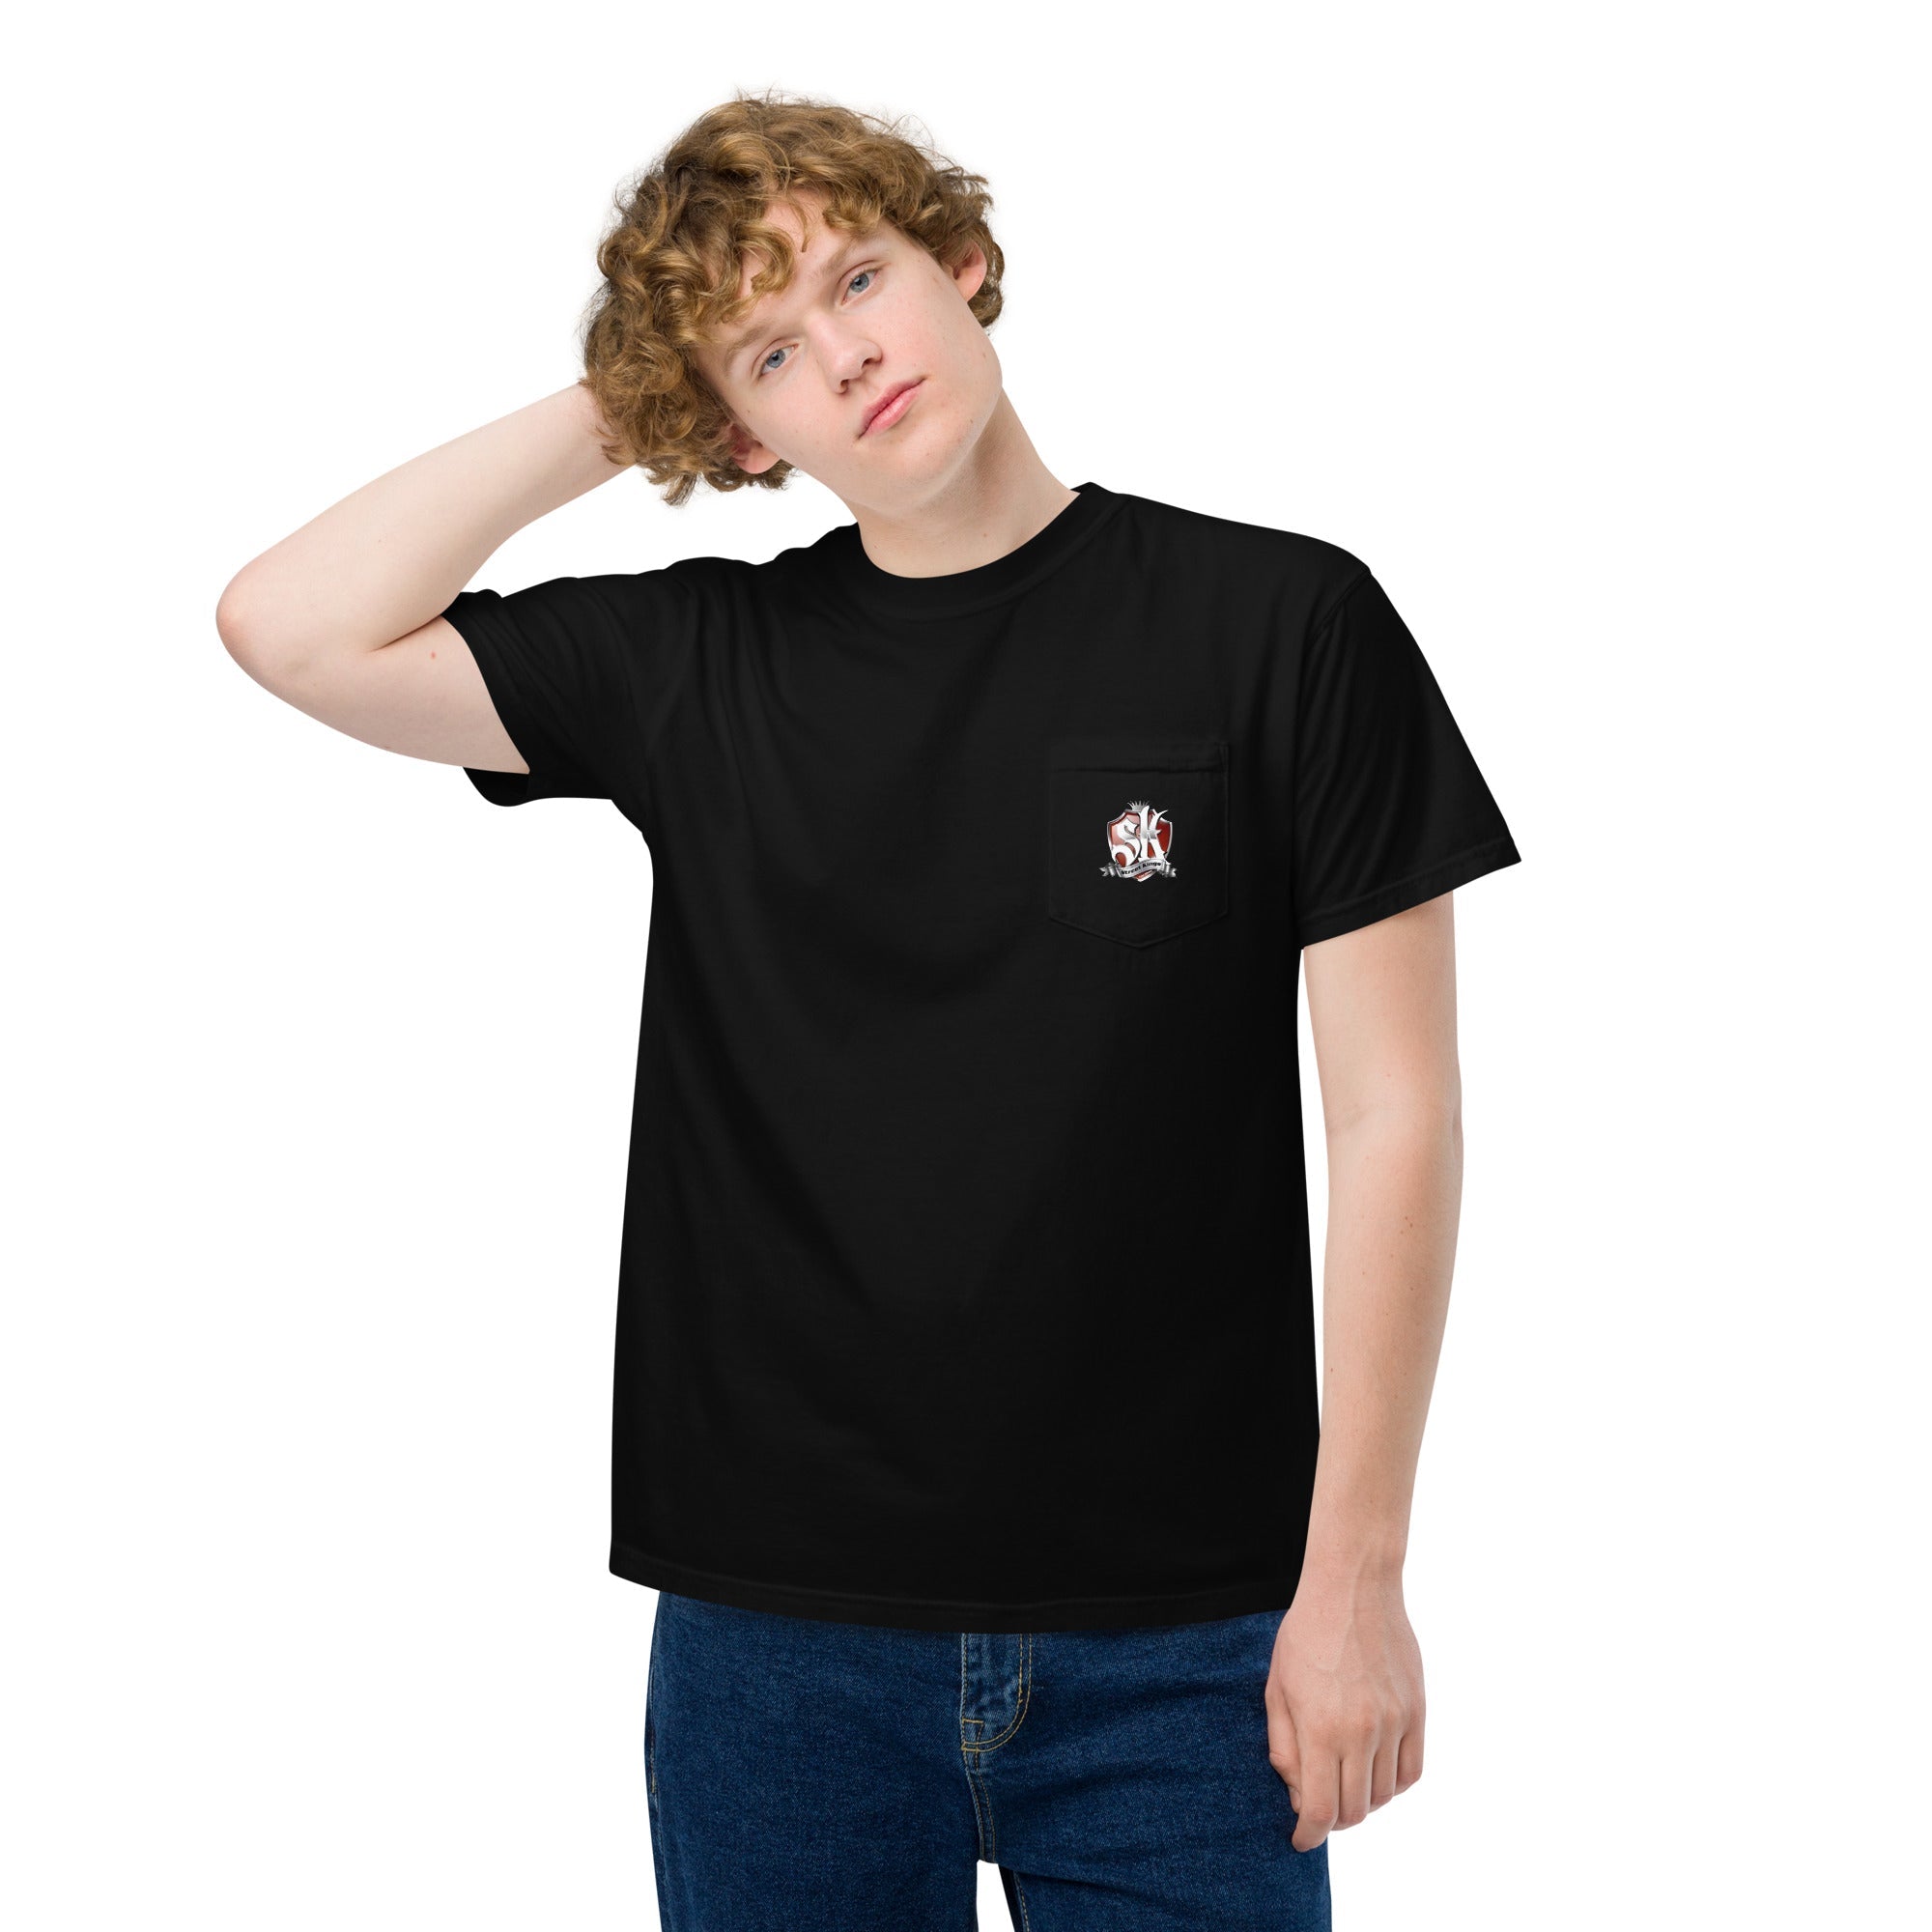 Unisex pocket t-shirt